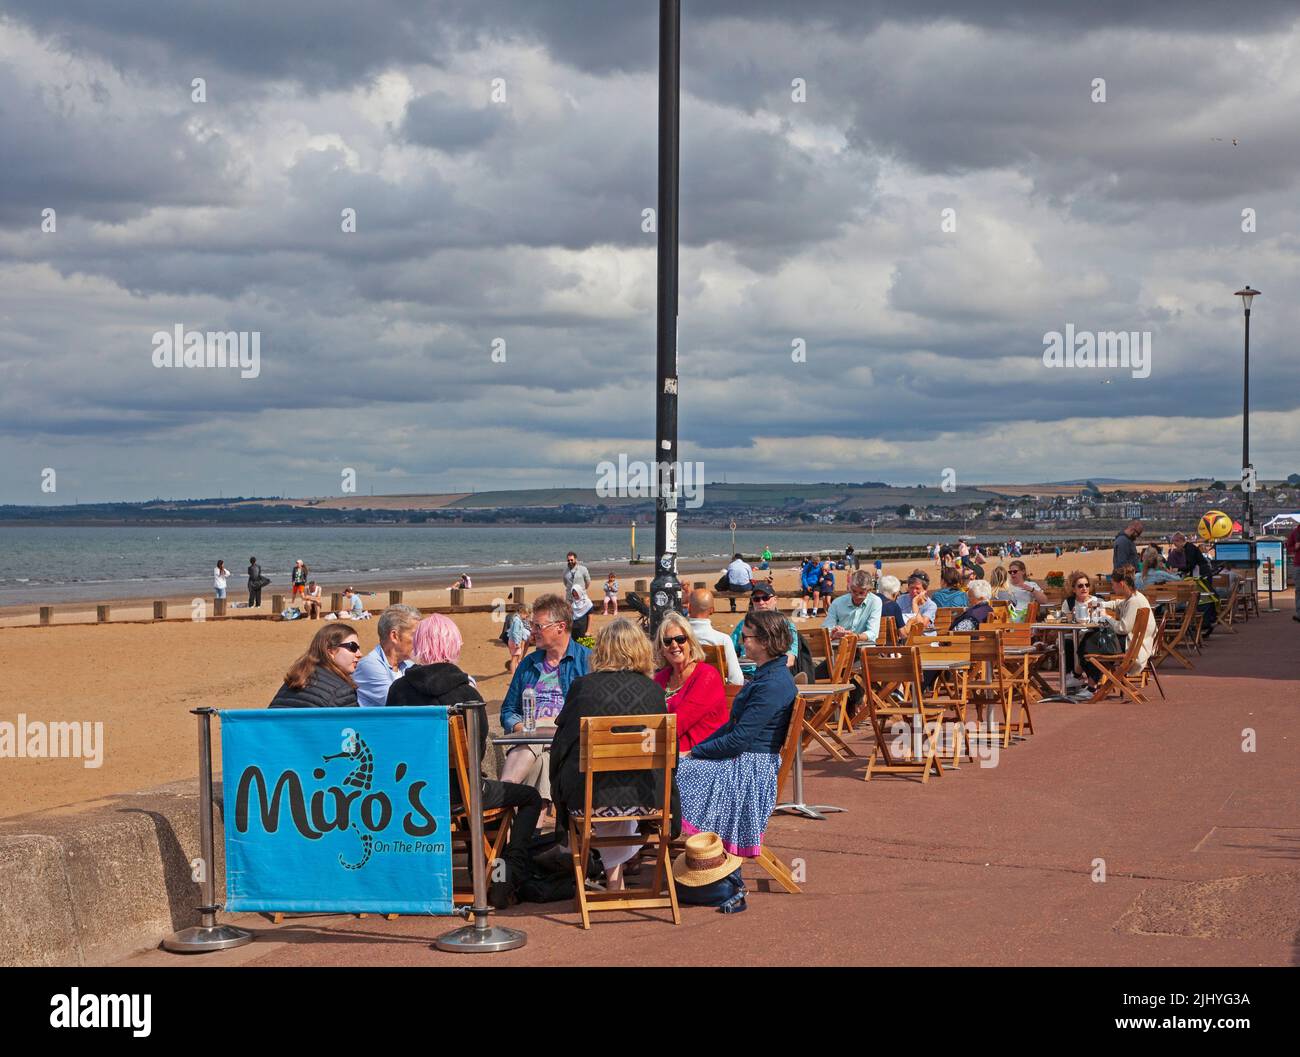 Portobello, Edimburgo, Escocia, Reino Unido. 21st de julio de 2022. Ventoso y nublado con ocasionales períodos de sol en la costa con una temperatura de 18 grados con un viento frío de 18 km/h y posibles ráfagas de 37 km/h para los pocos que lo visitaron para sentarse en la playa de arena o comer y beber en los cafés del paseo marítimo. Crédito: Scottishcreative/alamy live news. Foto de stock